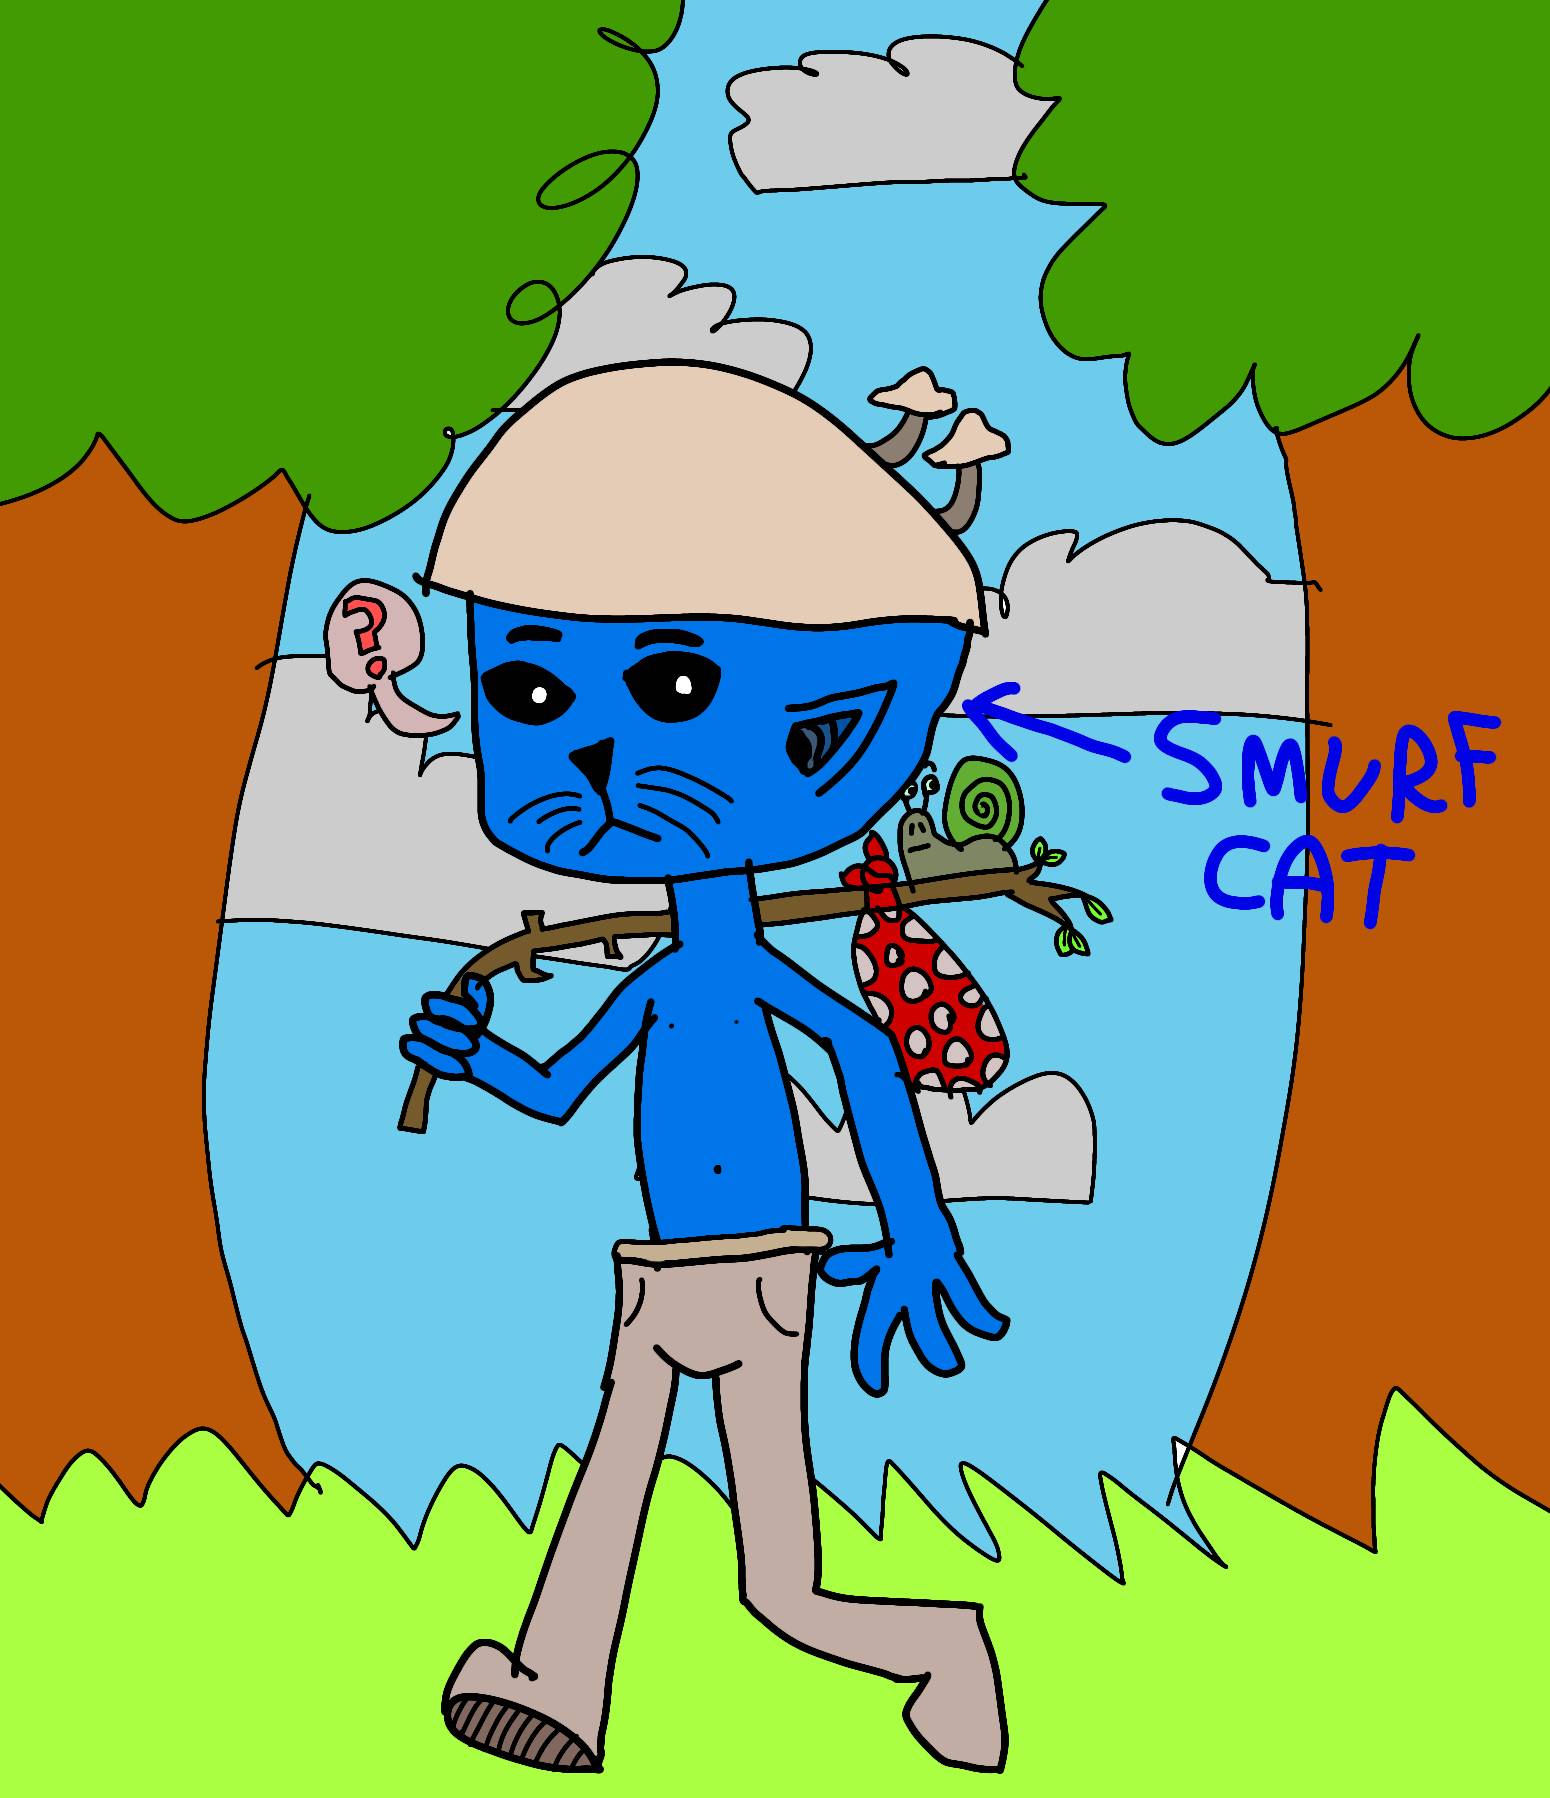 Smurf Cat by XxSolarTheHedgehogxX on DeviantArt